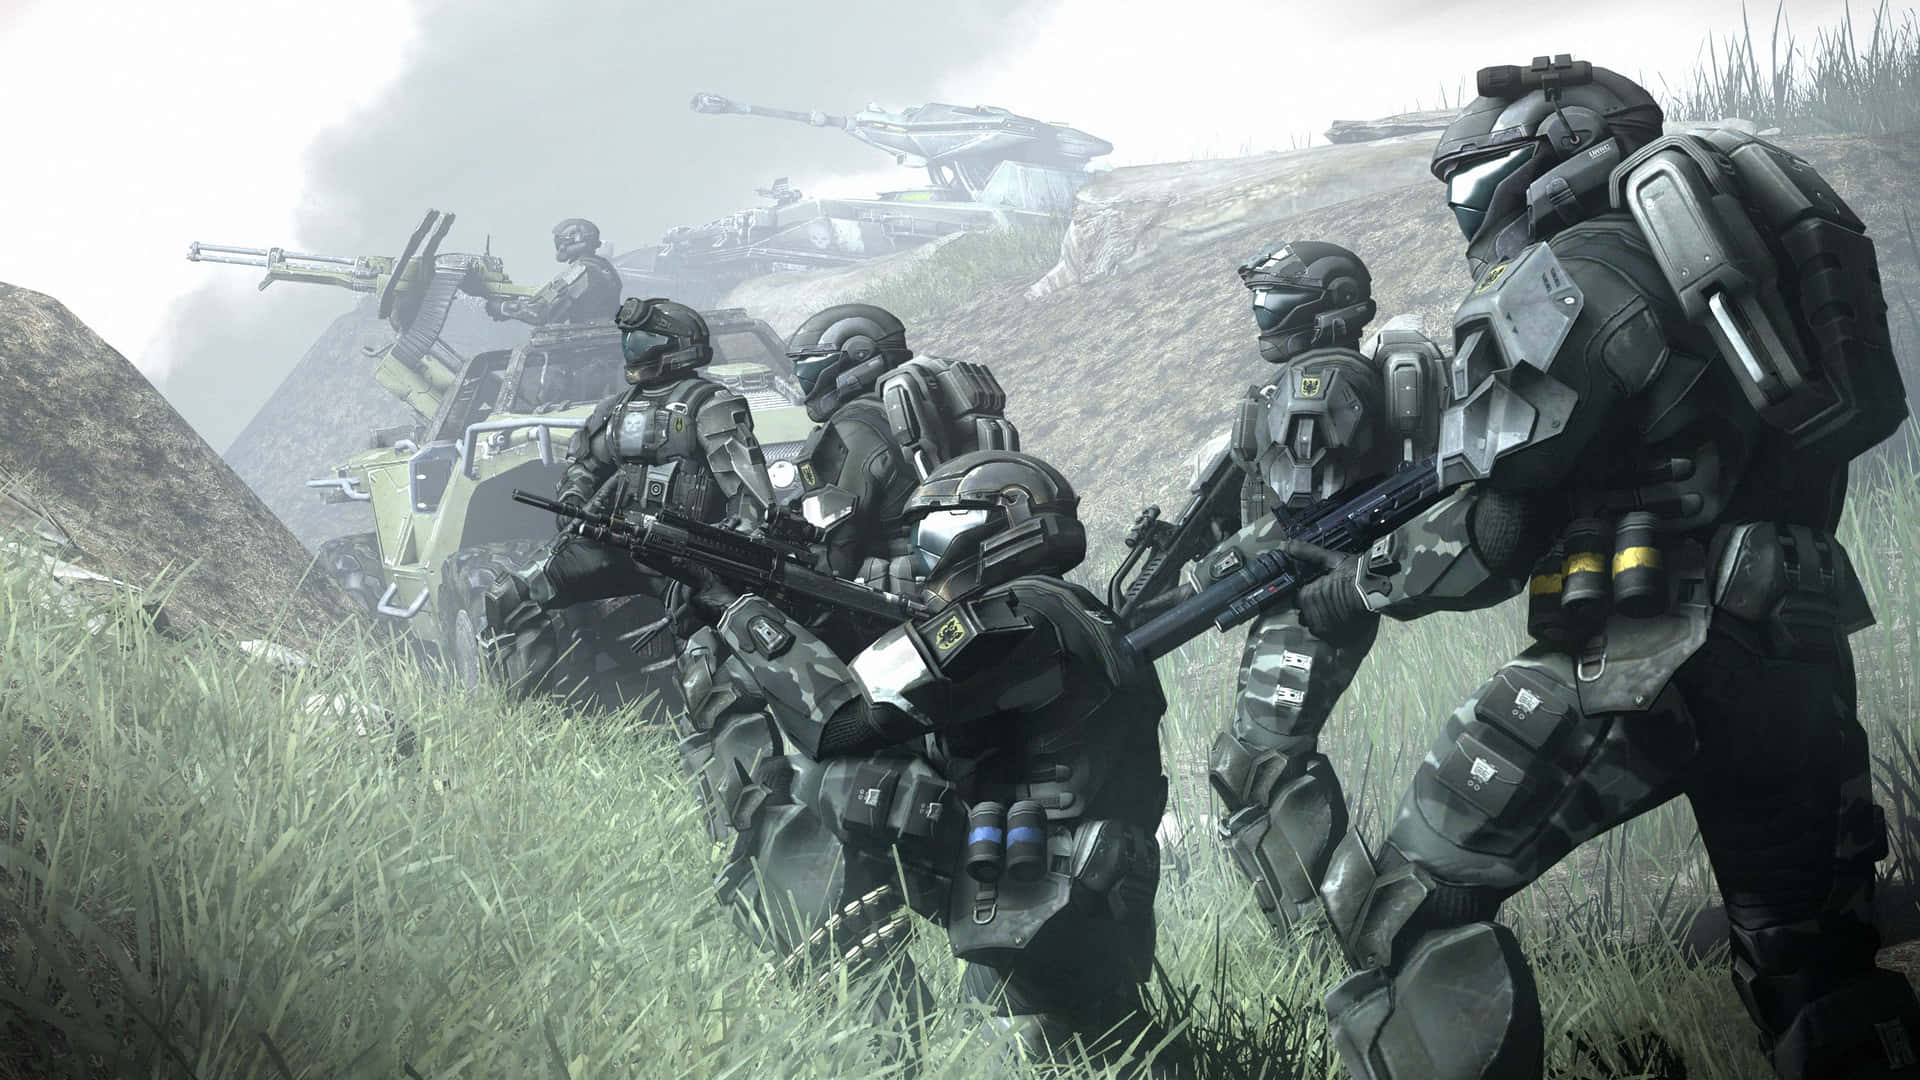 Escenaintensa De Batalla De Halo. Fondo de pantalla